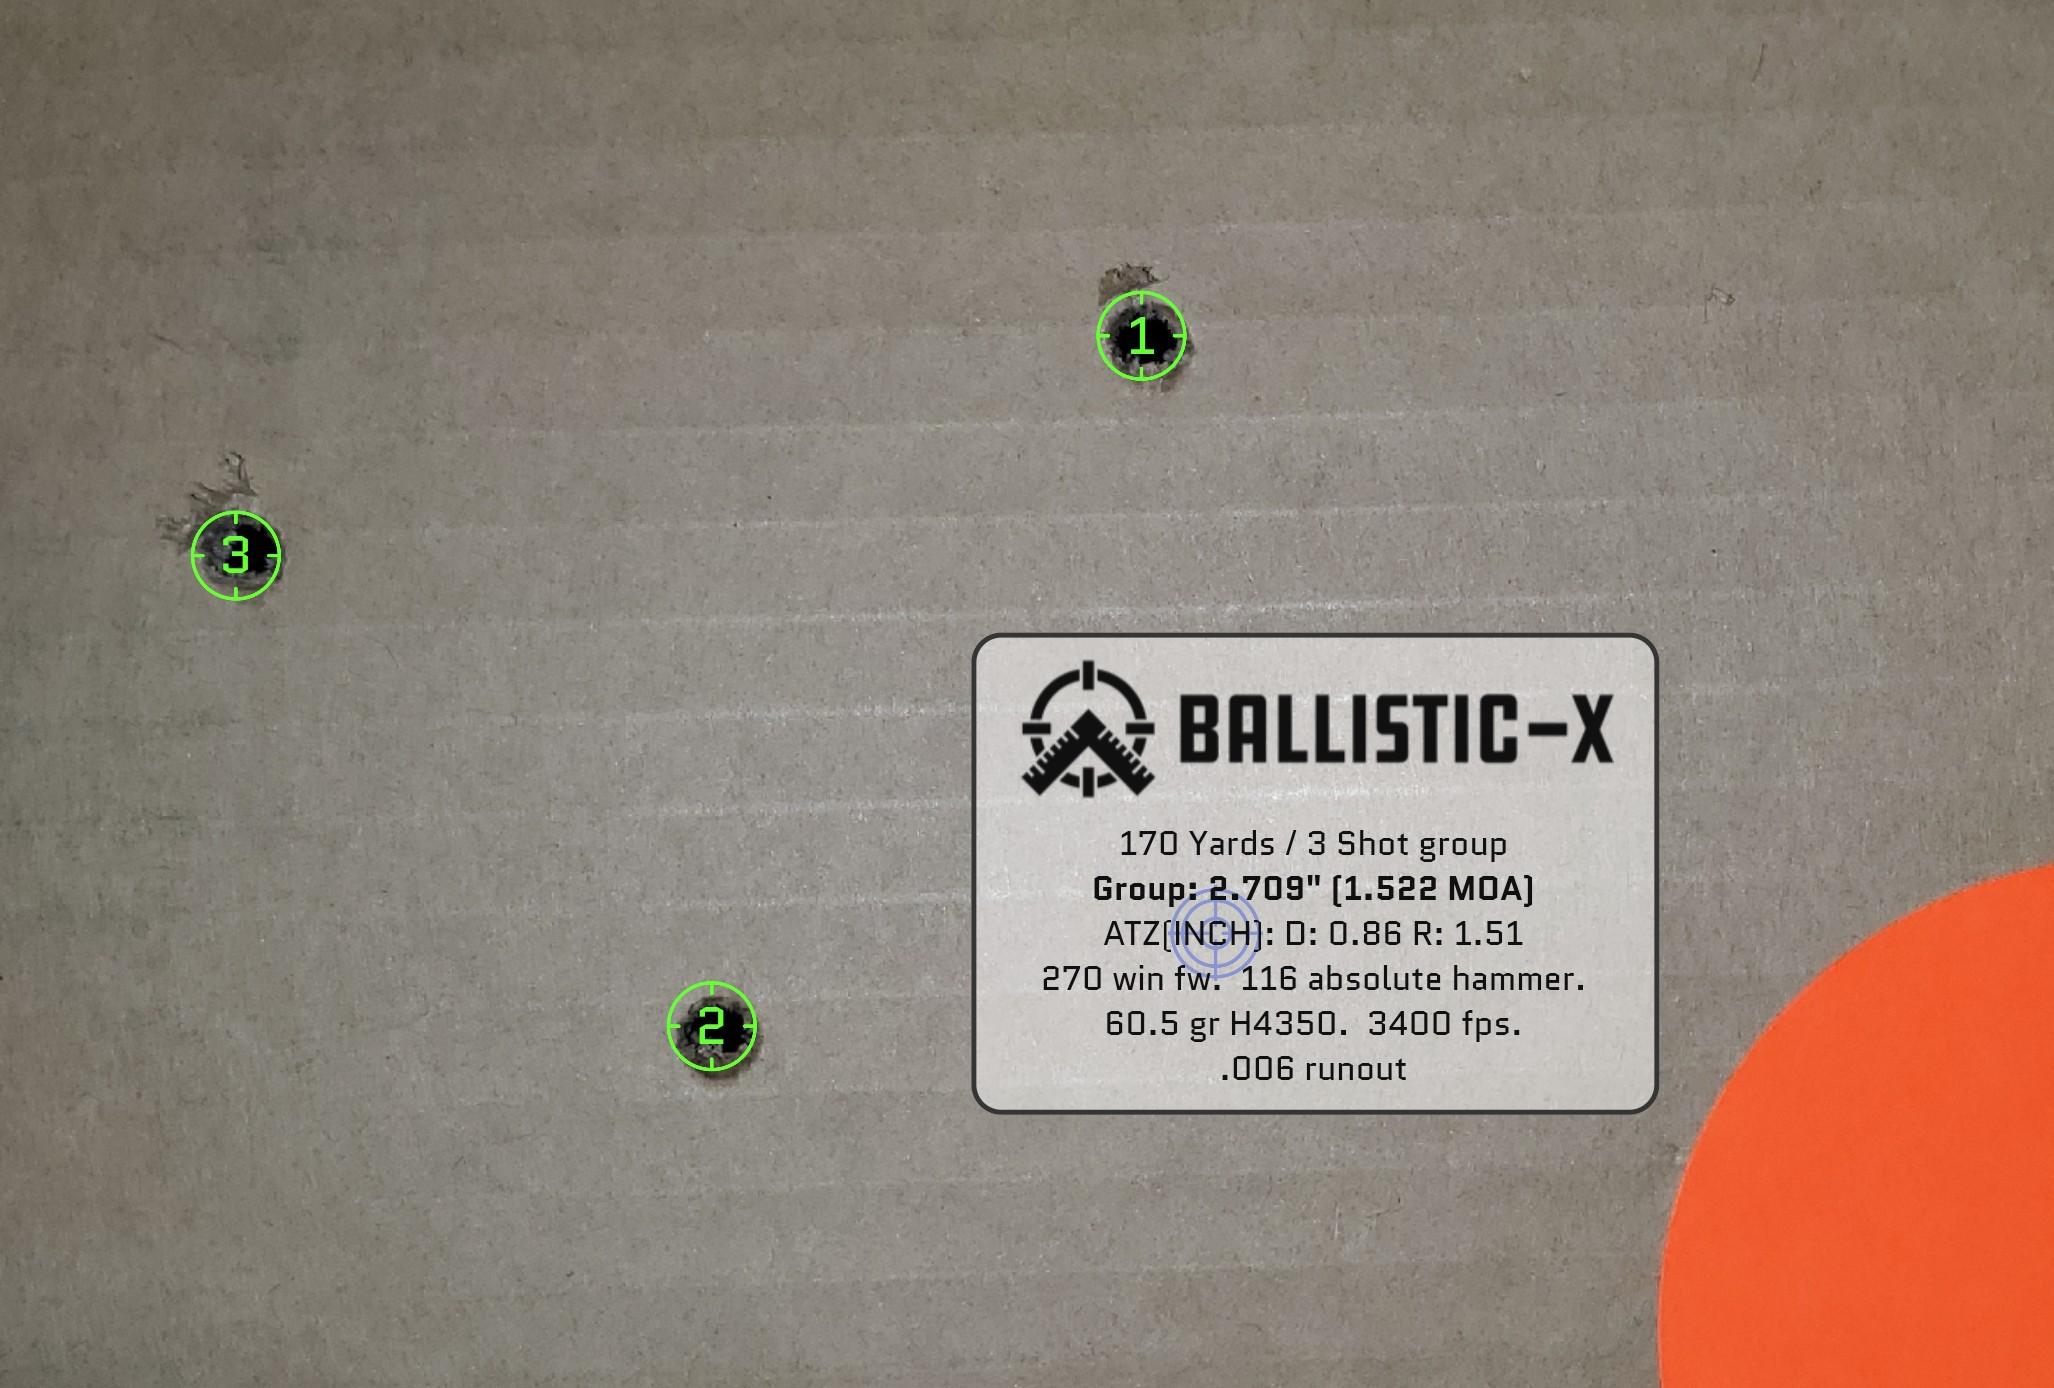 Ballistic-X-Export-2021-04-04 22:59:55.290866.jpg